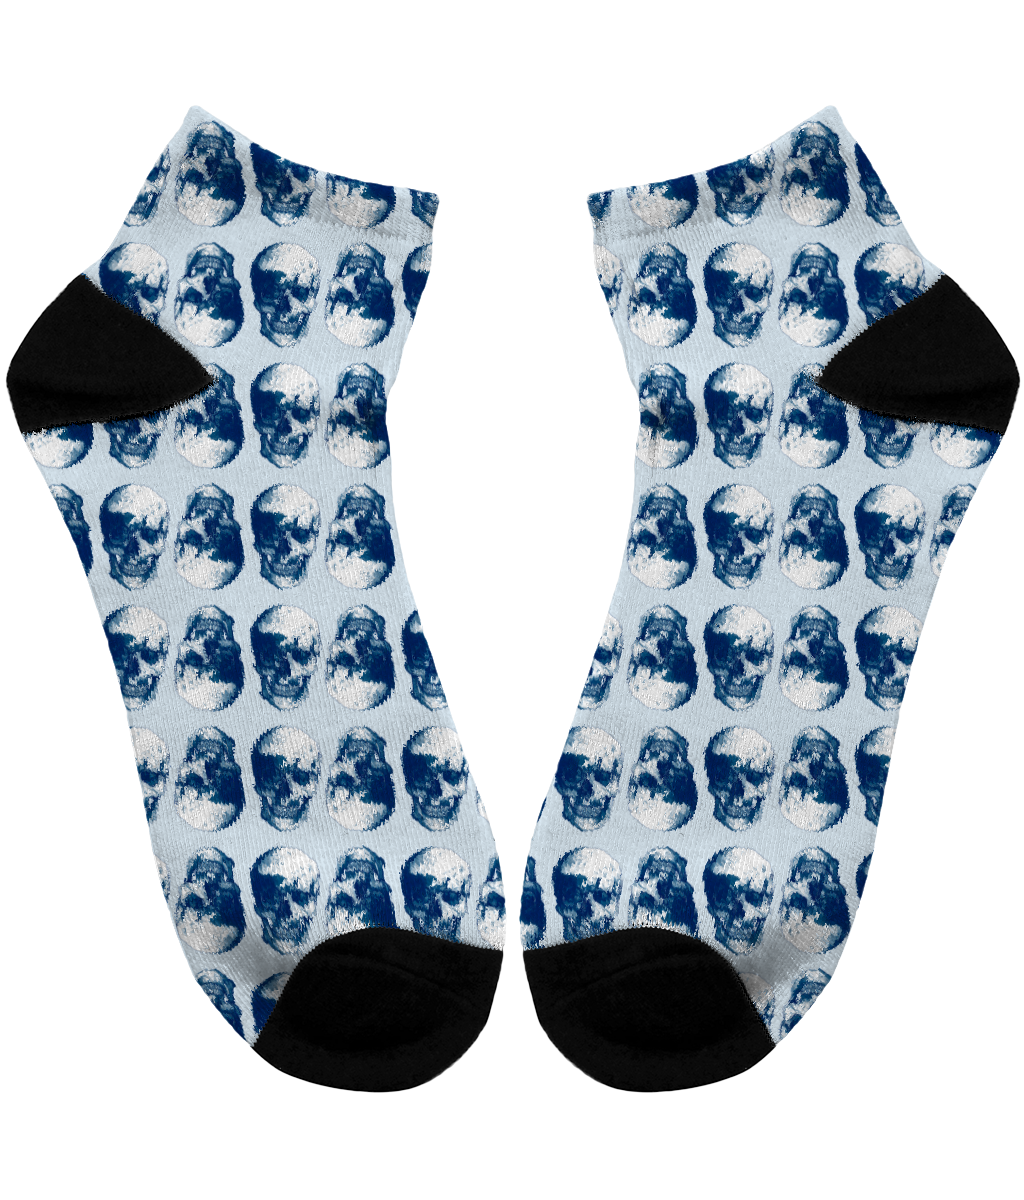 Men's Subli Ankle Socks Blue Skulls Opposites by Robert Bowen - Robert Bowen Tees